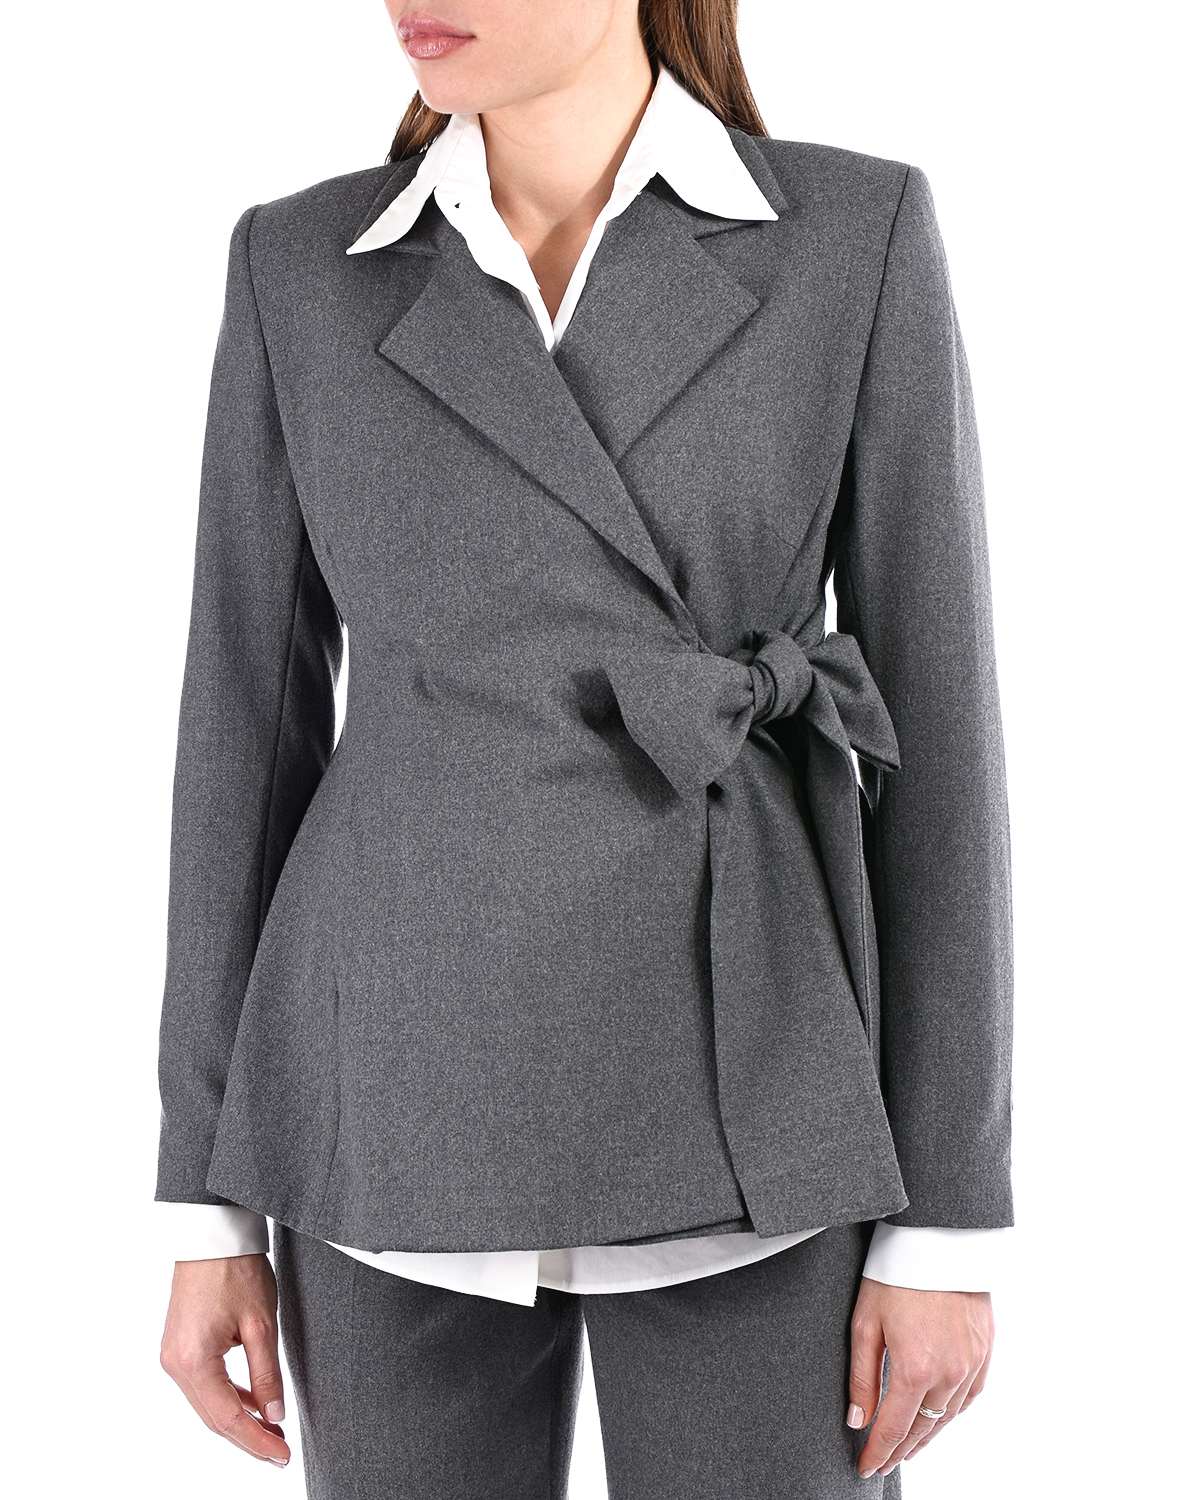 Офисный костюм для беременных Monamoon, размер 44, цвет серый - фото 9